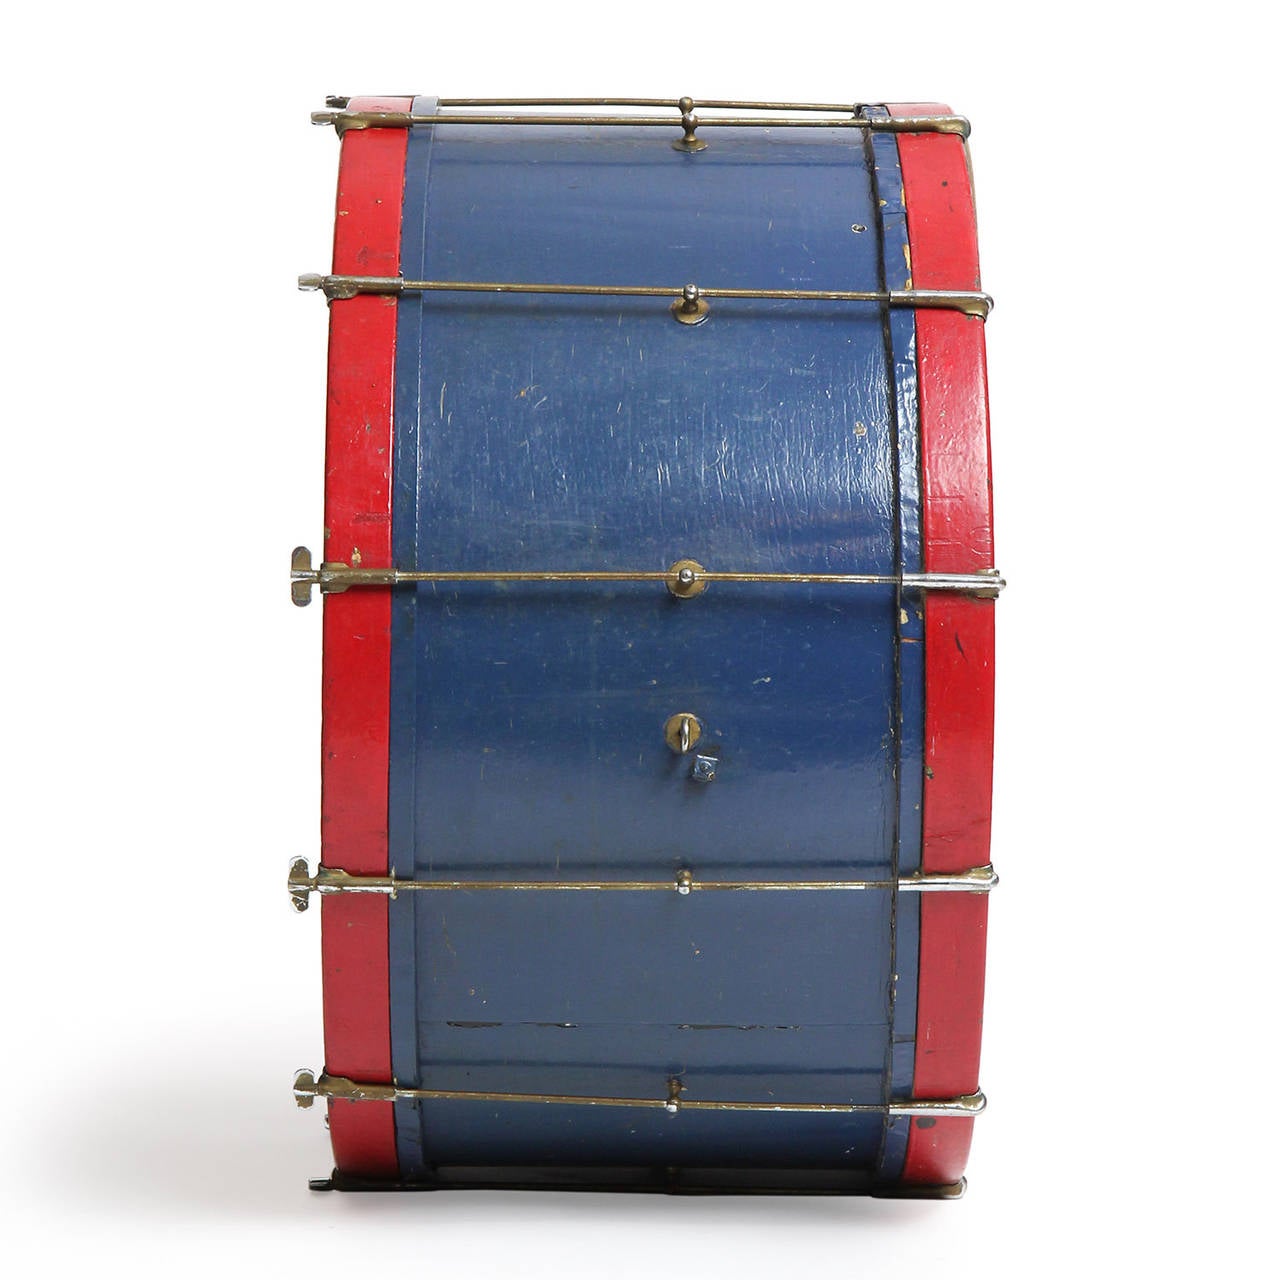 Ein reizvoller, ausdrucksstarker und einzigartiger beleuchteter Glastisch, der aus einer alten Basstrommel gefertigt wurde, die ihre ursprüngliche satte blaue und rote Farbe beibehalten hat. Eine antike nautische technische Zeichnung ist innovativ